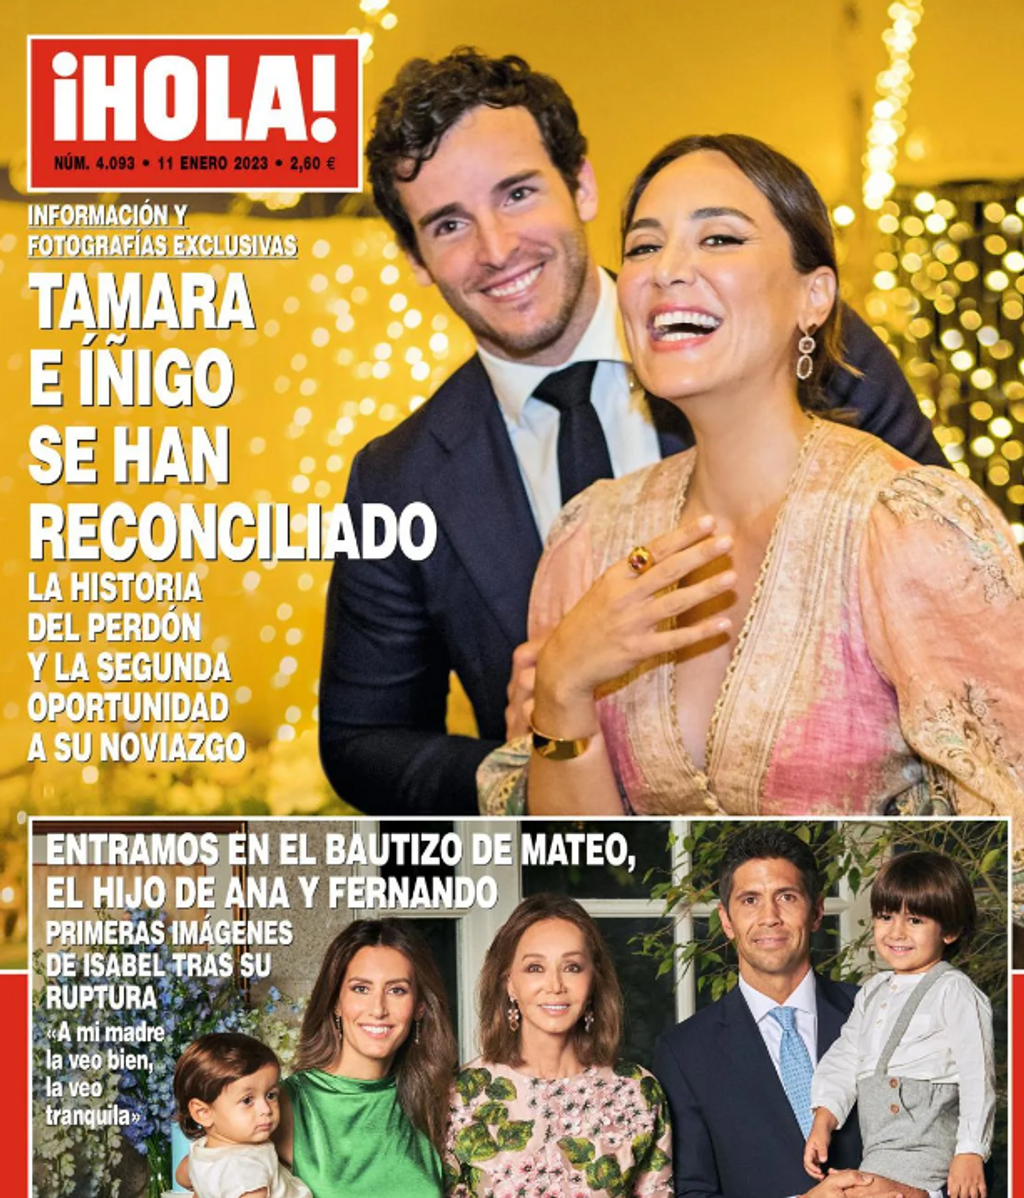 La portada que confirma la reconciliación de Íñigo y Tamara